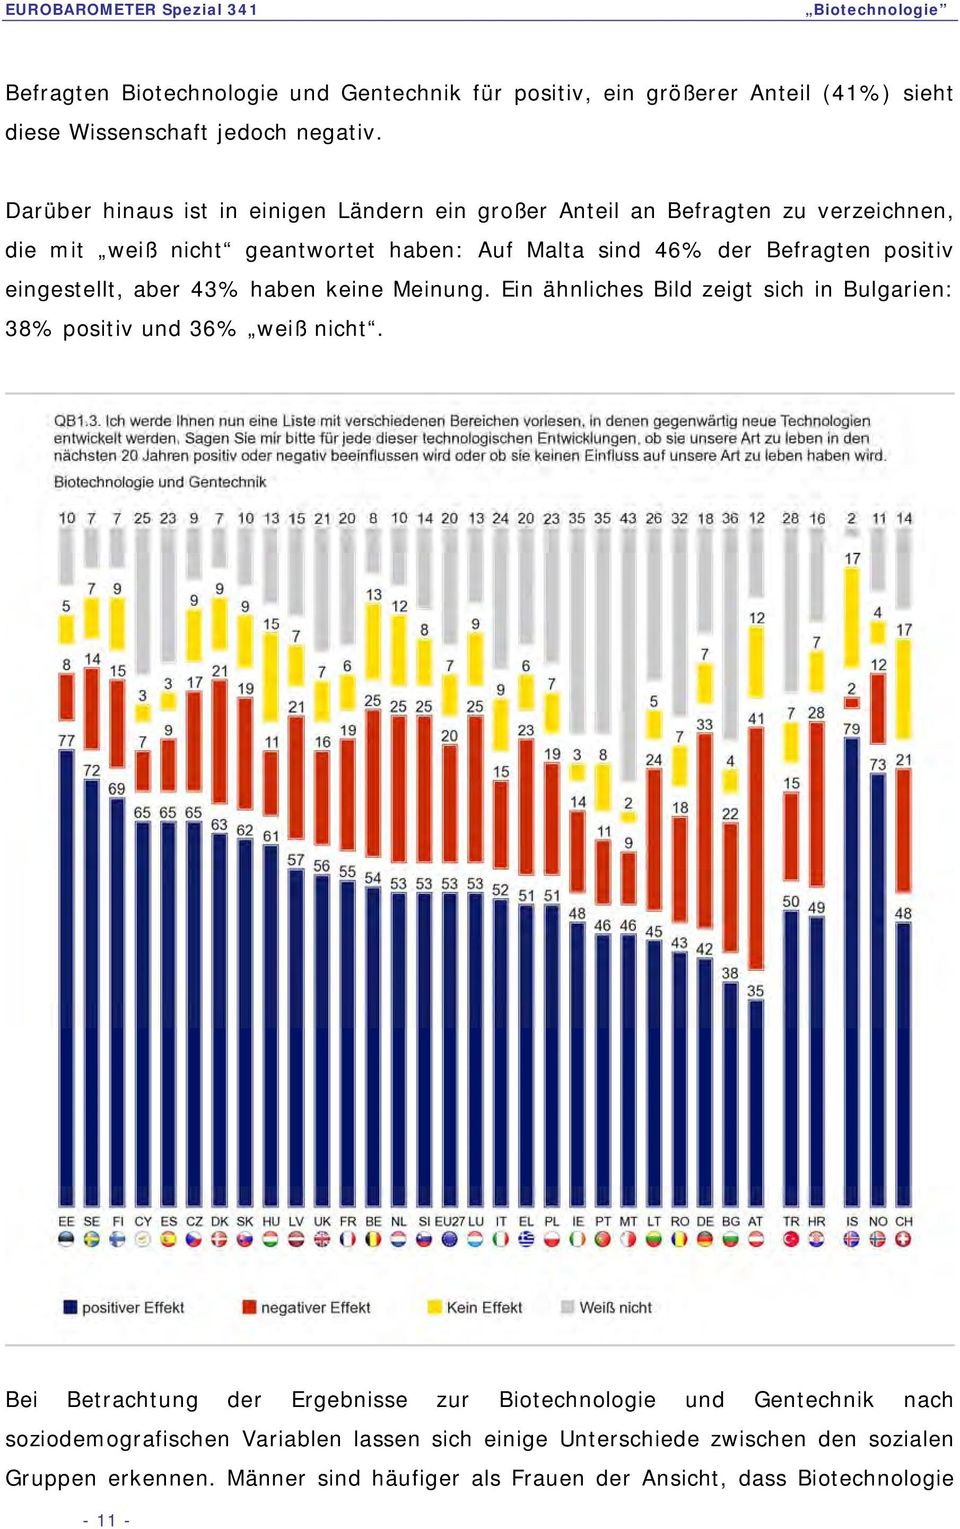 positiv eingestellt, aber 43% haben keine Meinung. Ein ähnliches Bild zeigt sich in Bulgarien: 38% positiv und 36% weiß nicht.